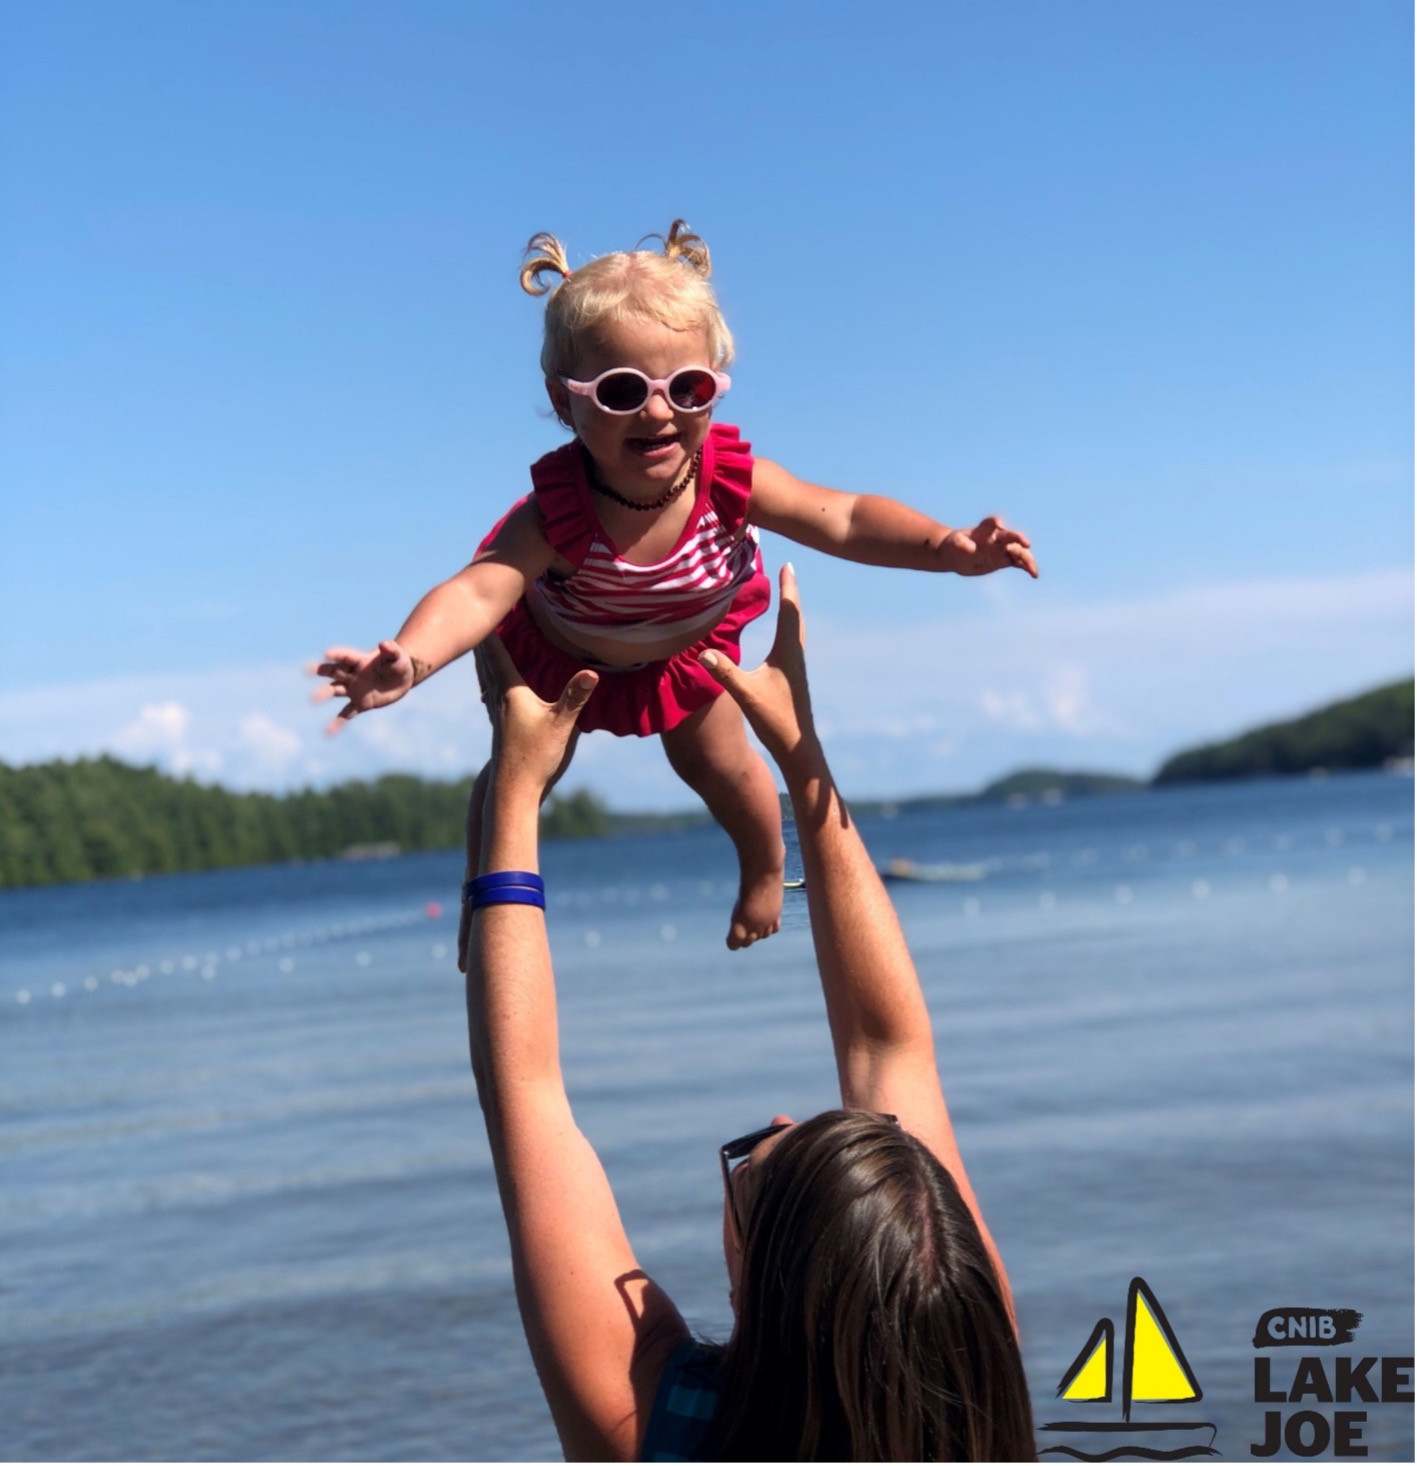 ne fillette portant un maillot de bain et des lunettes de soleil est lancée en l'air par sa mère sur la rive au Centre Lake Joseph d'INCA. Le logo jaune et noir avec un voilier du Centre Lake Joe d'INCA dans le coin inférieur droit de l'image.